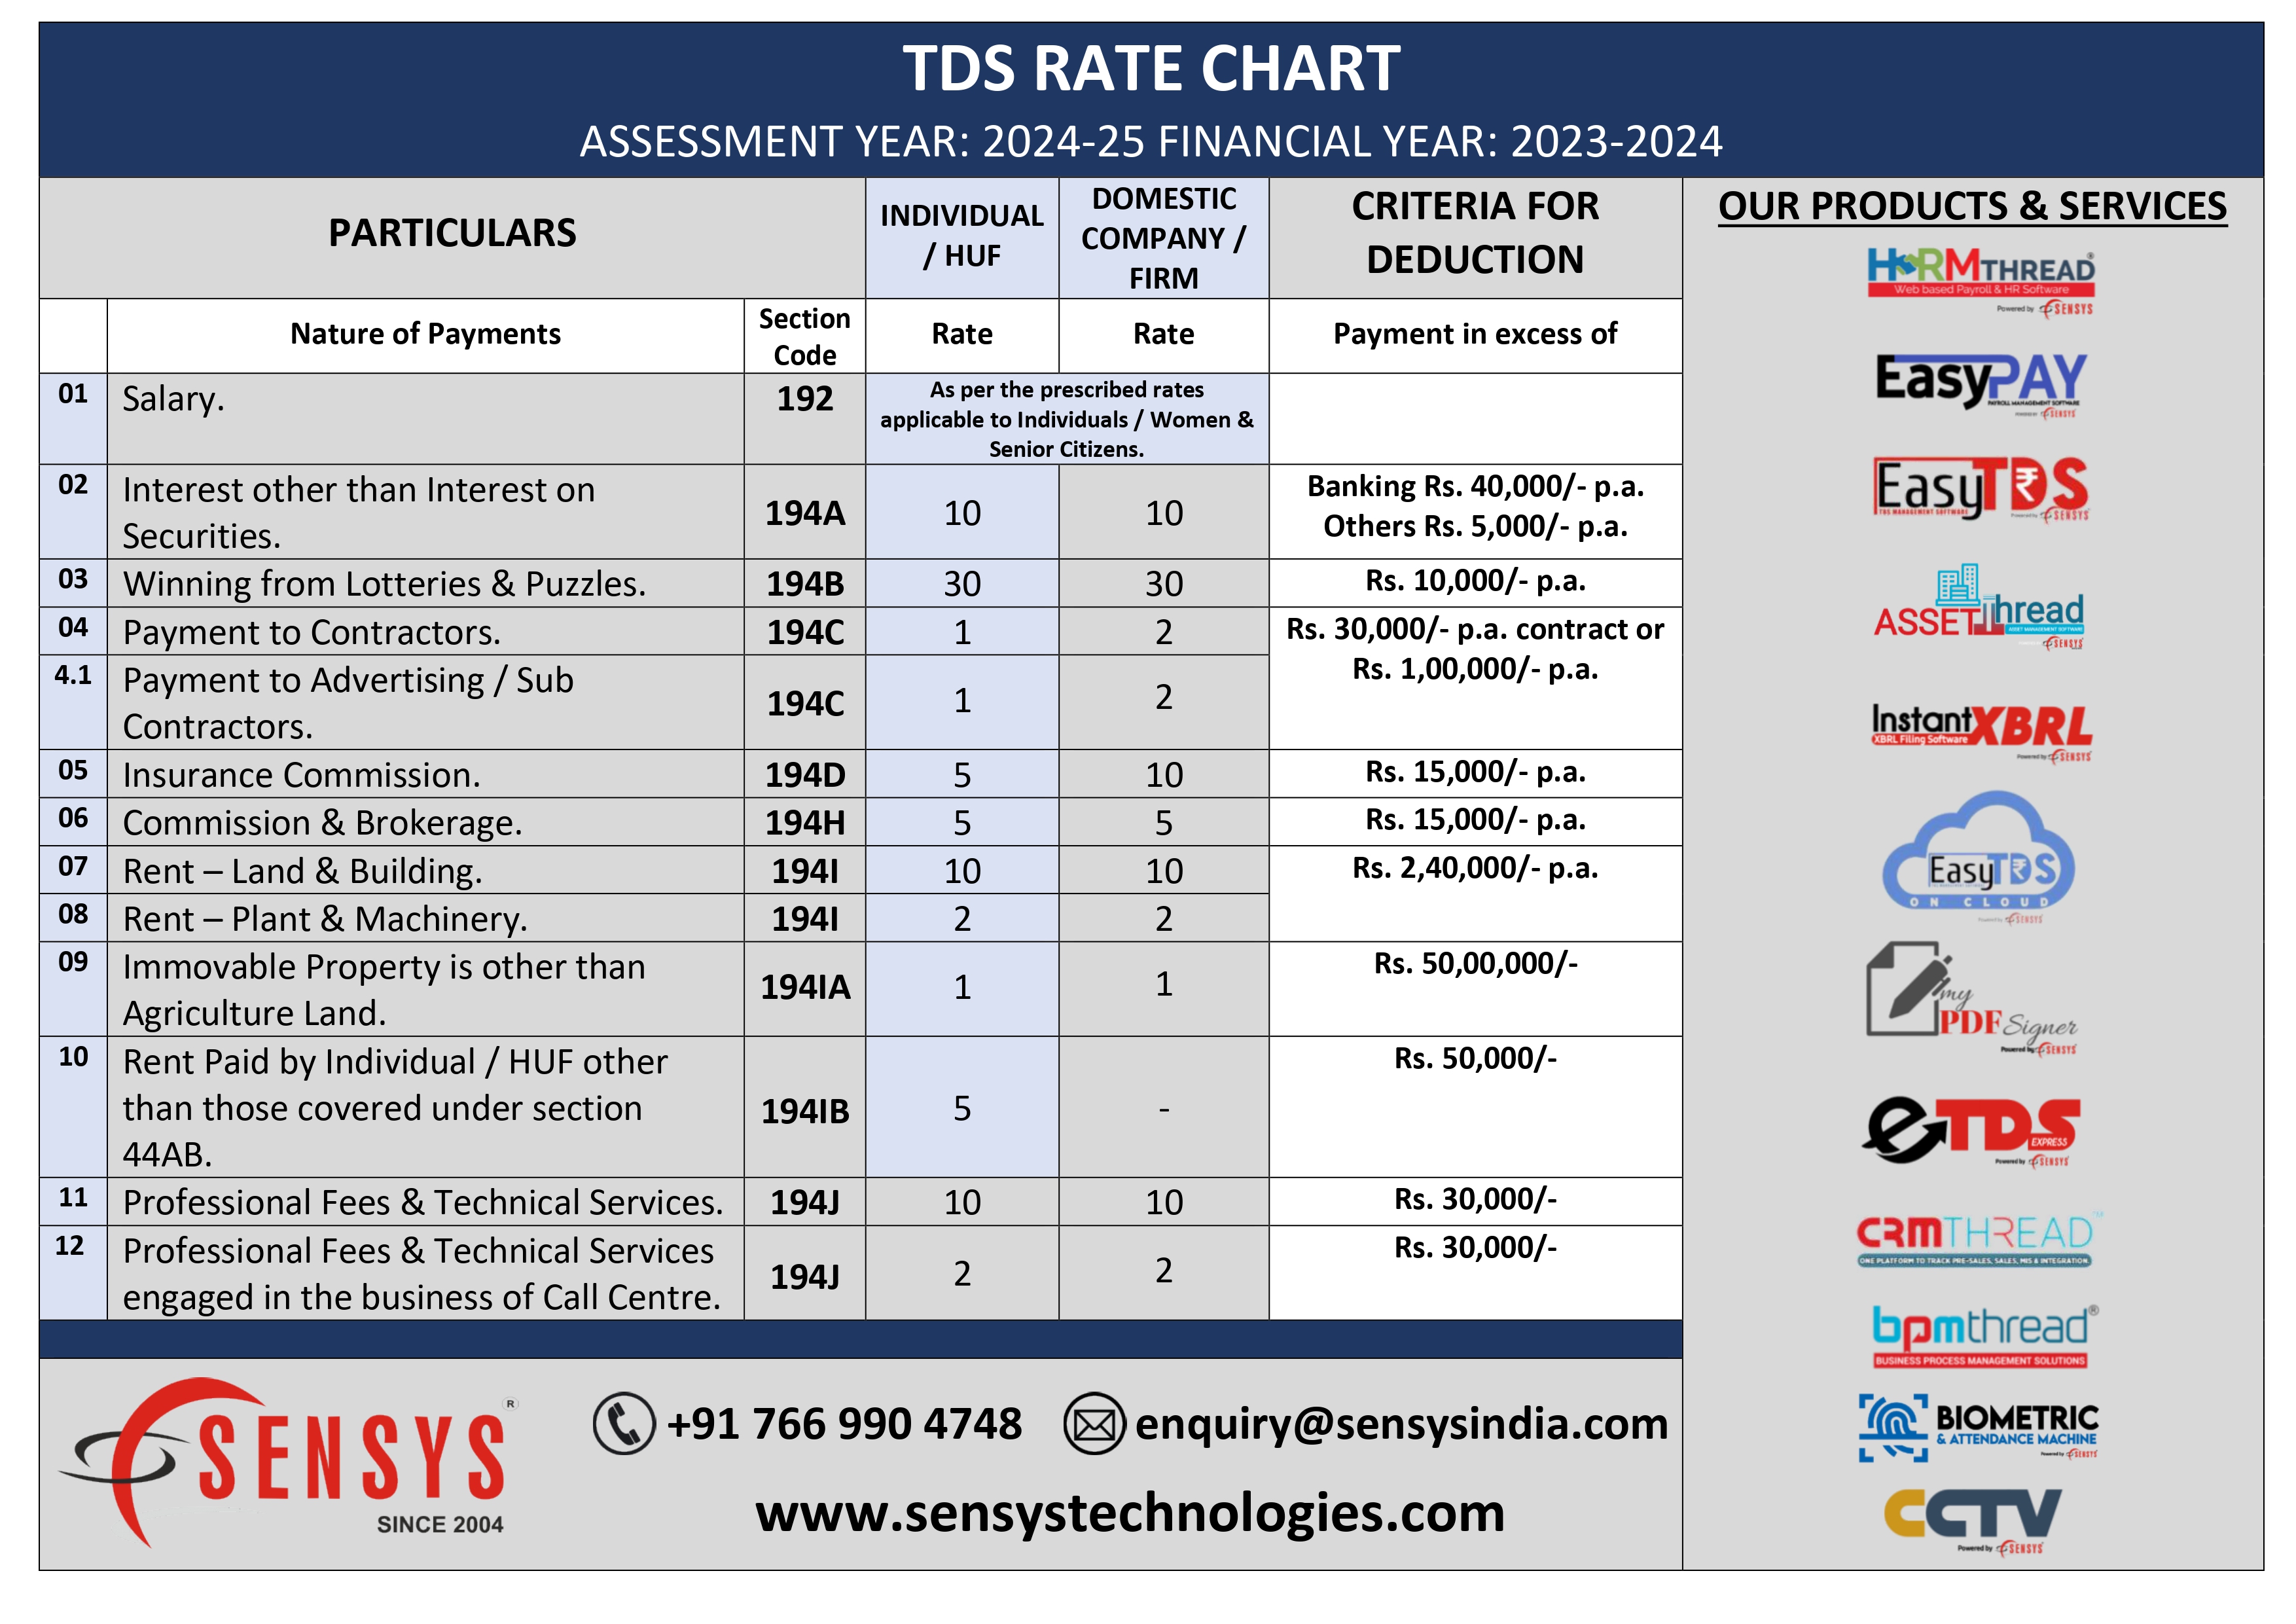 TDS Rate Chart (AY 2024-2025 FY 2023-2024) » Sensys Blog.